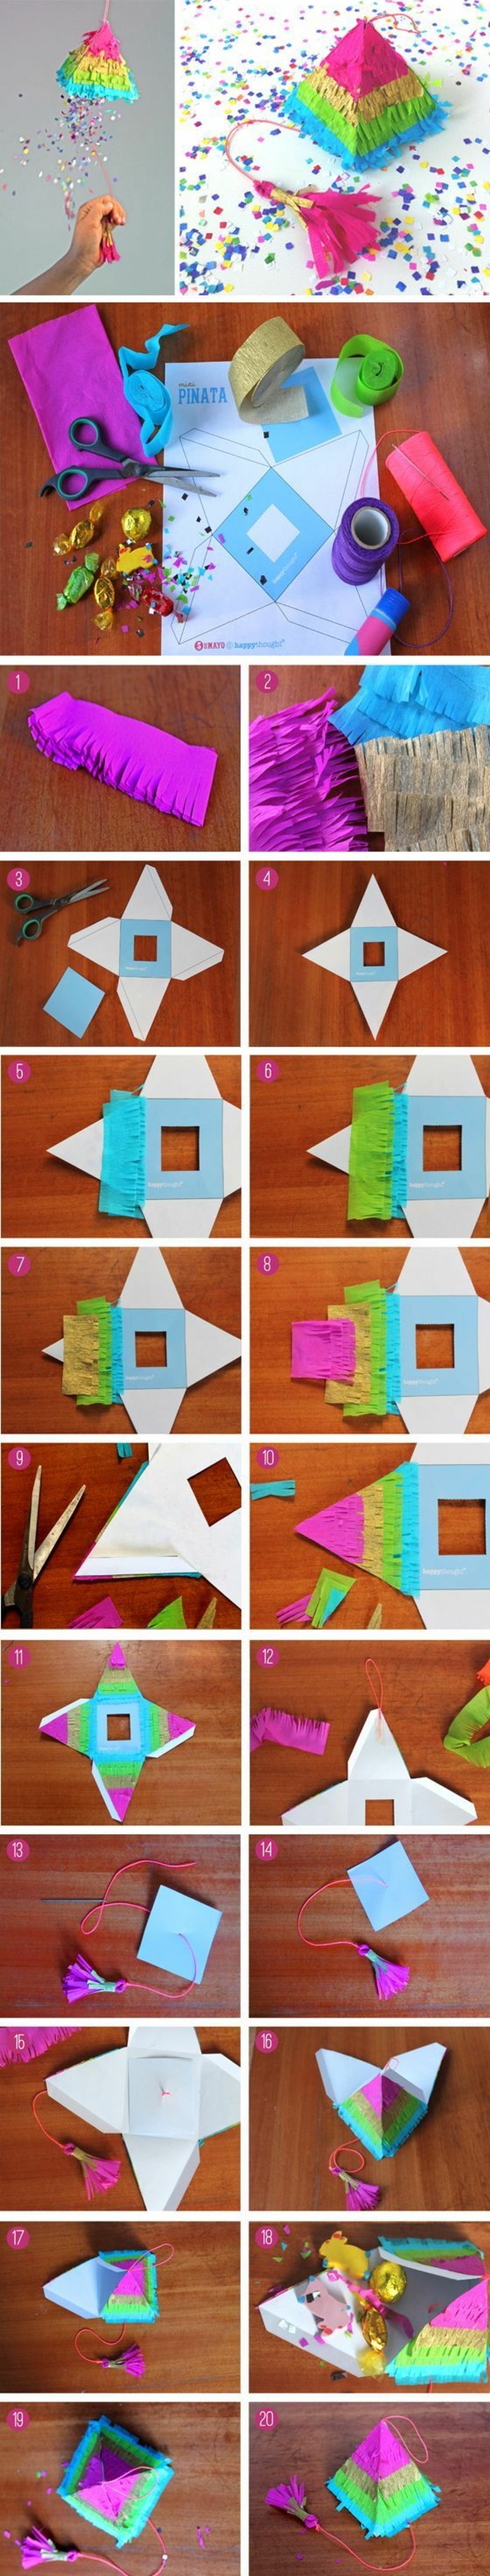 Създаване на малка пирамида от картон, цветна хартия, ножица